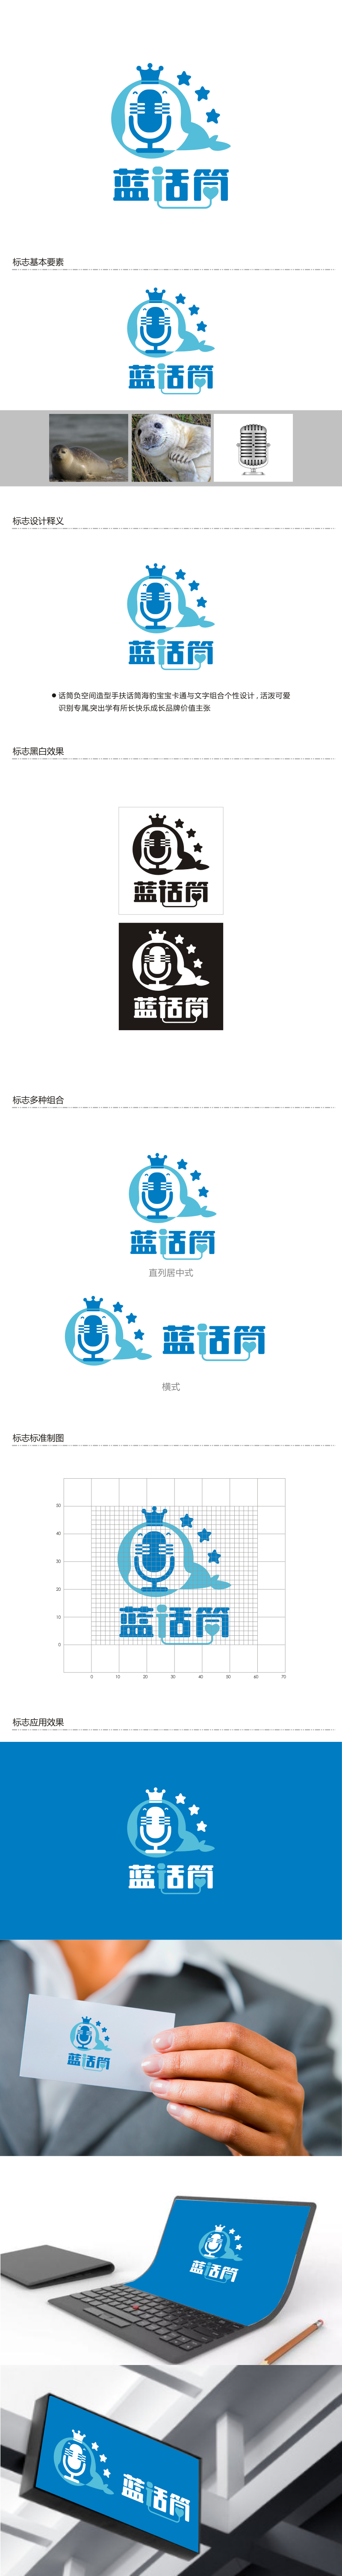 姜彦海的蓝话筒【重新整理设计需求】logo设计